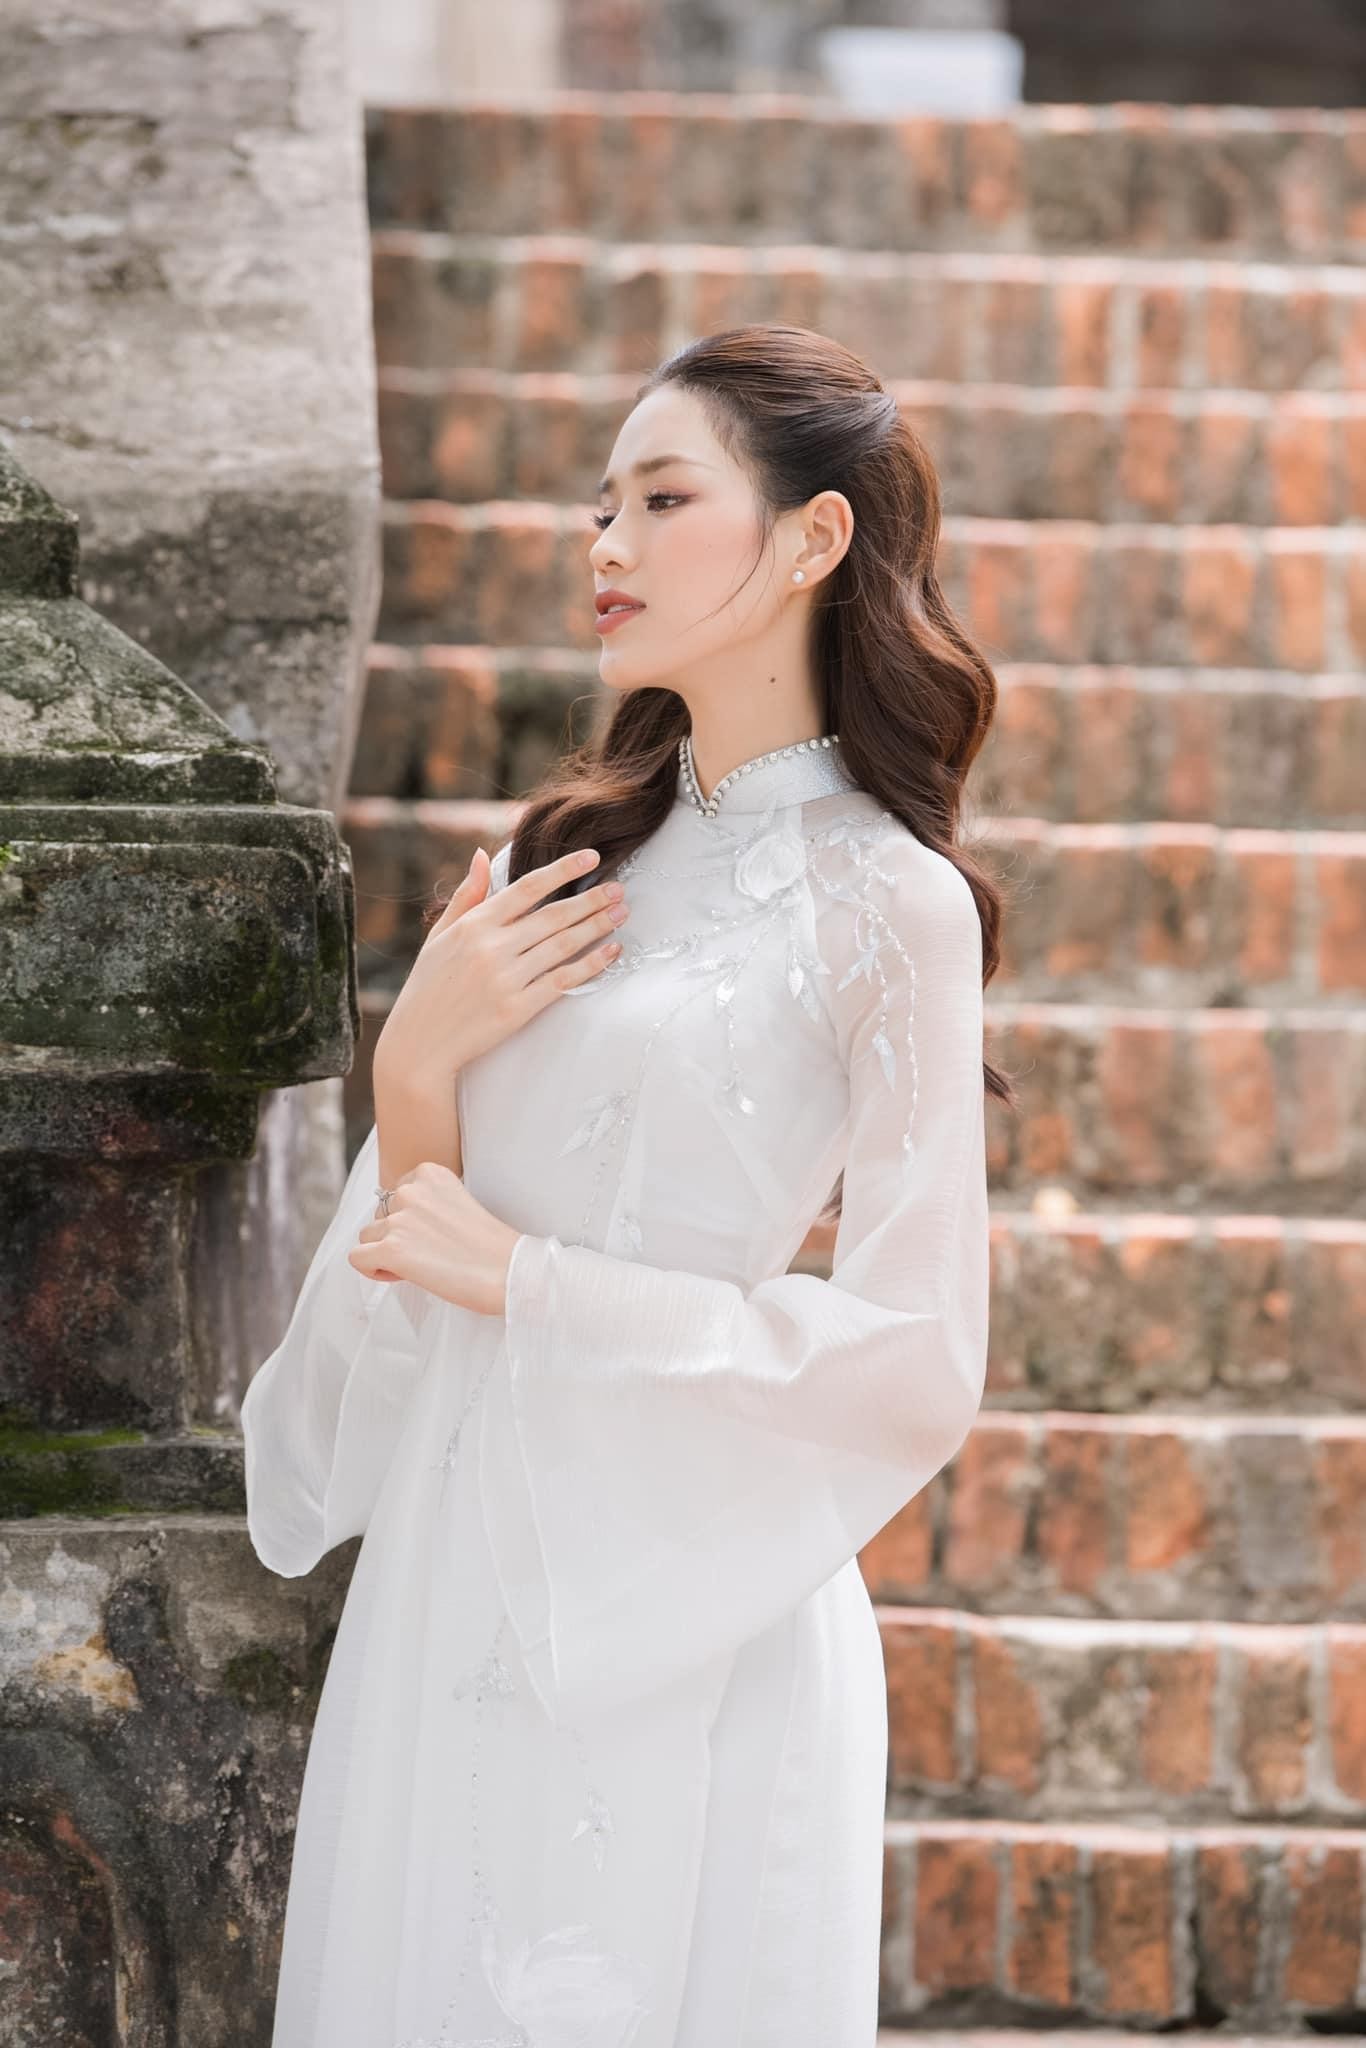 Hoa hậu Đỗ Thị Hà đẹp thuần khiết với áo dài trắng - Ảnh 3.